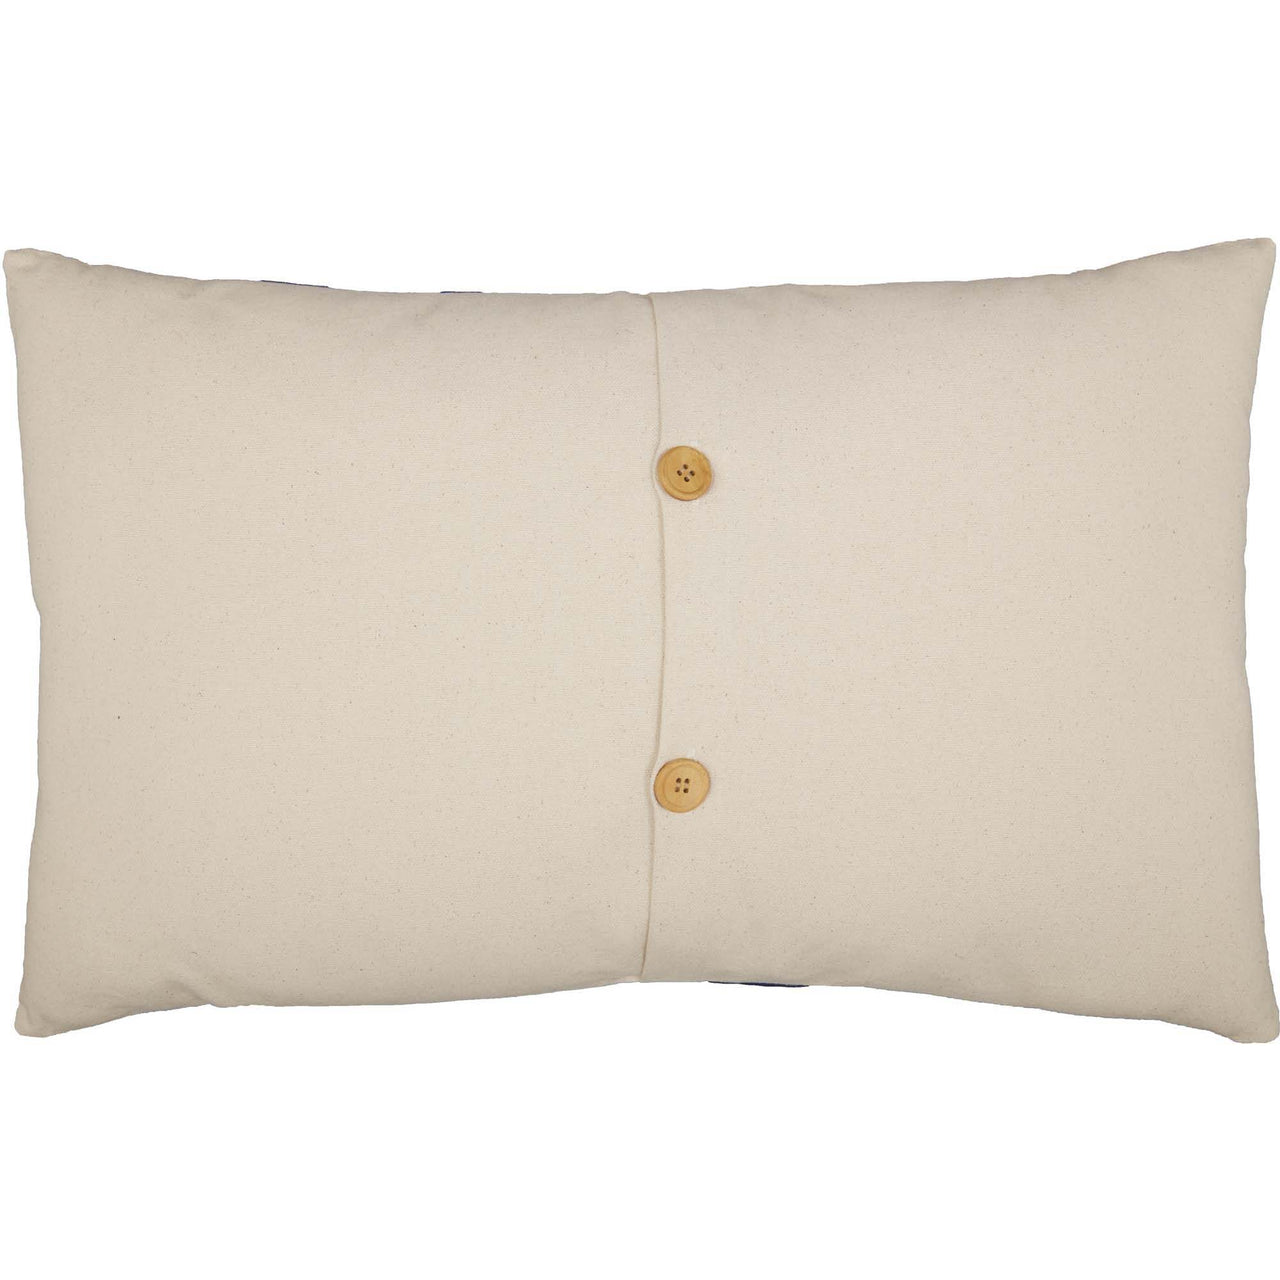 Felt Accent Pillows  Simply Primitive 1776